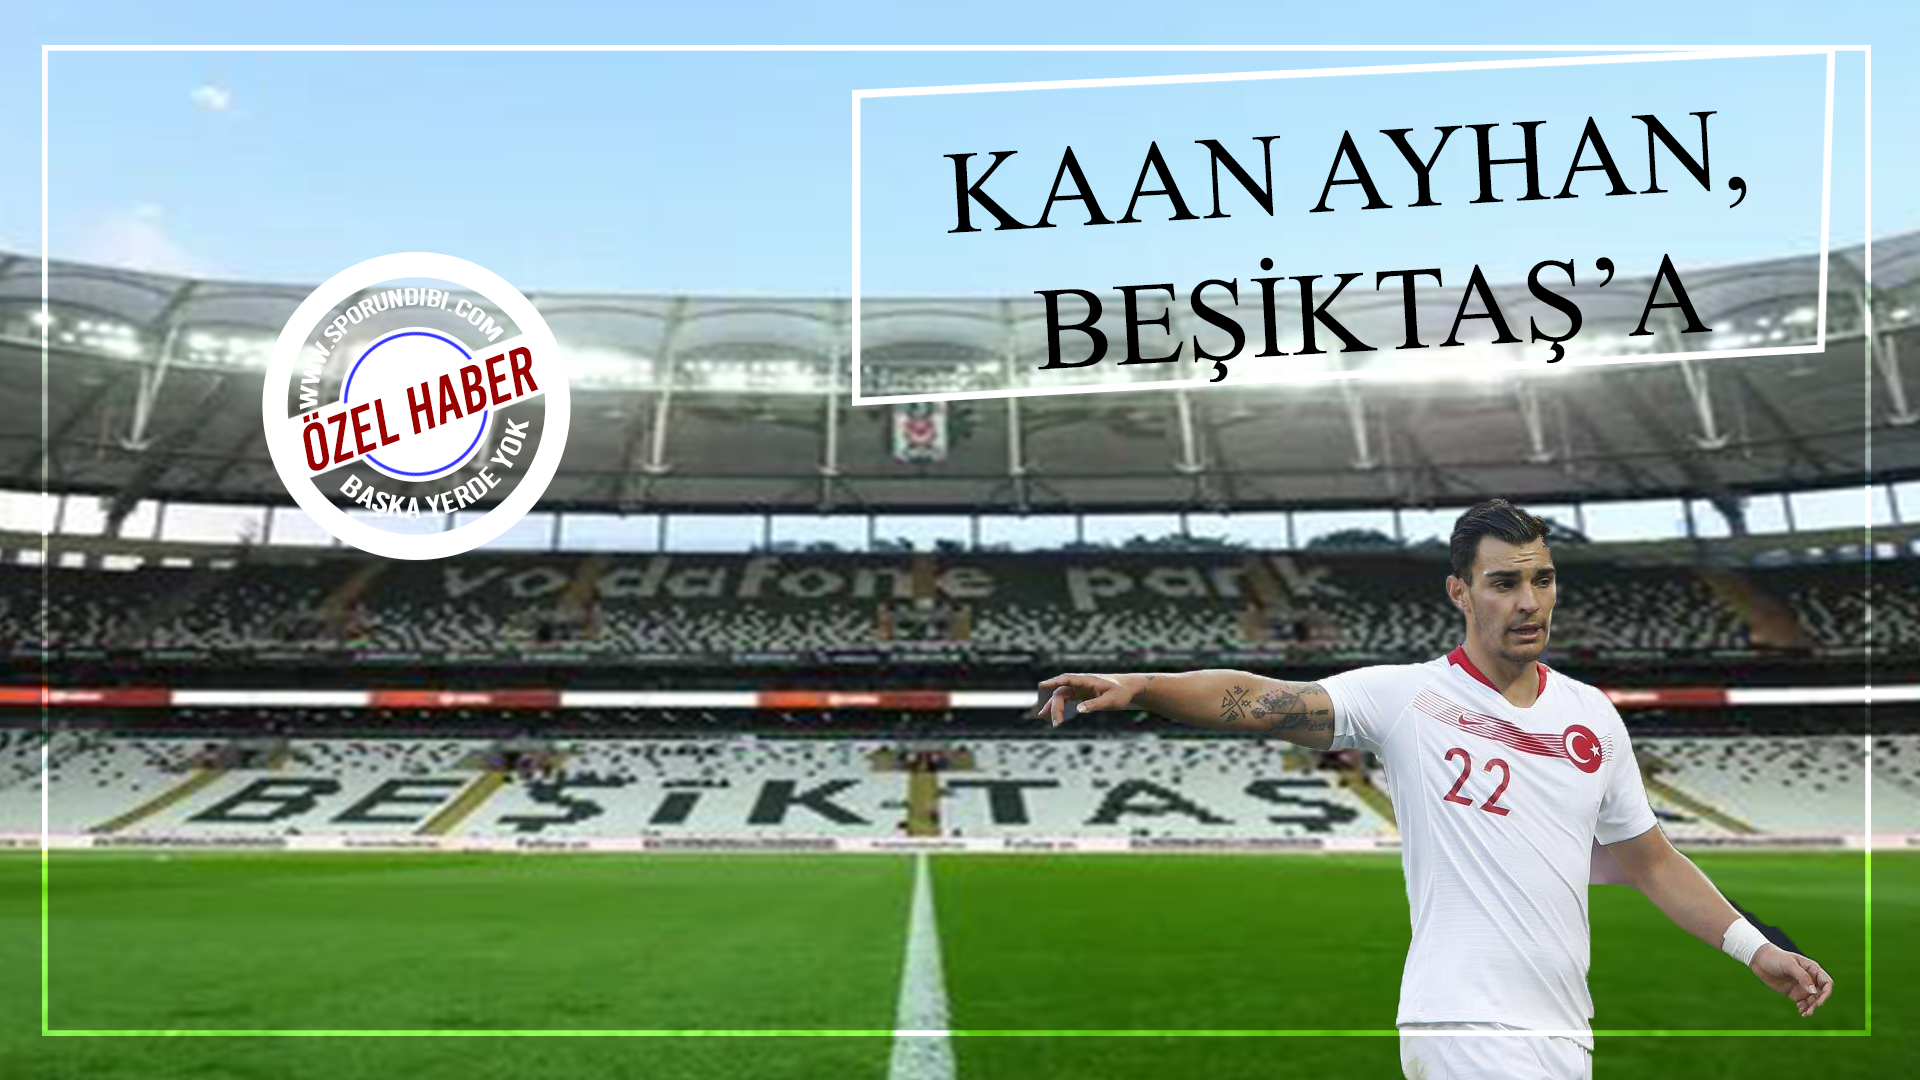 Kaan Ayhan, Beşiktaş'a!